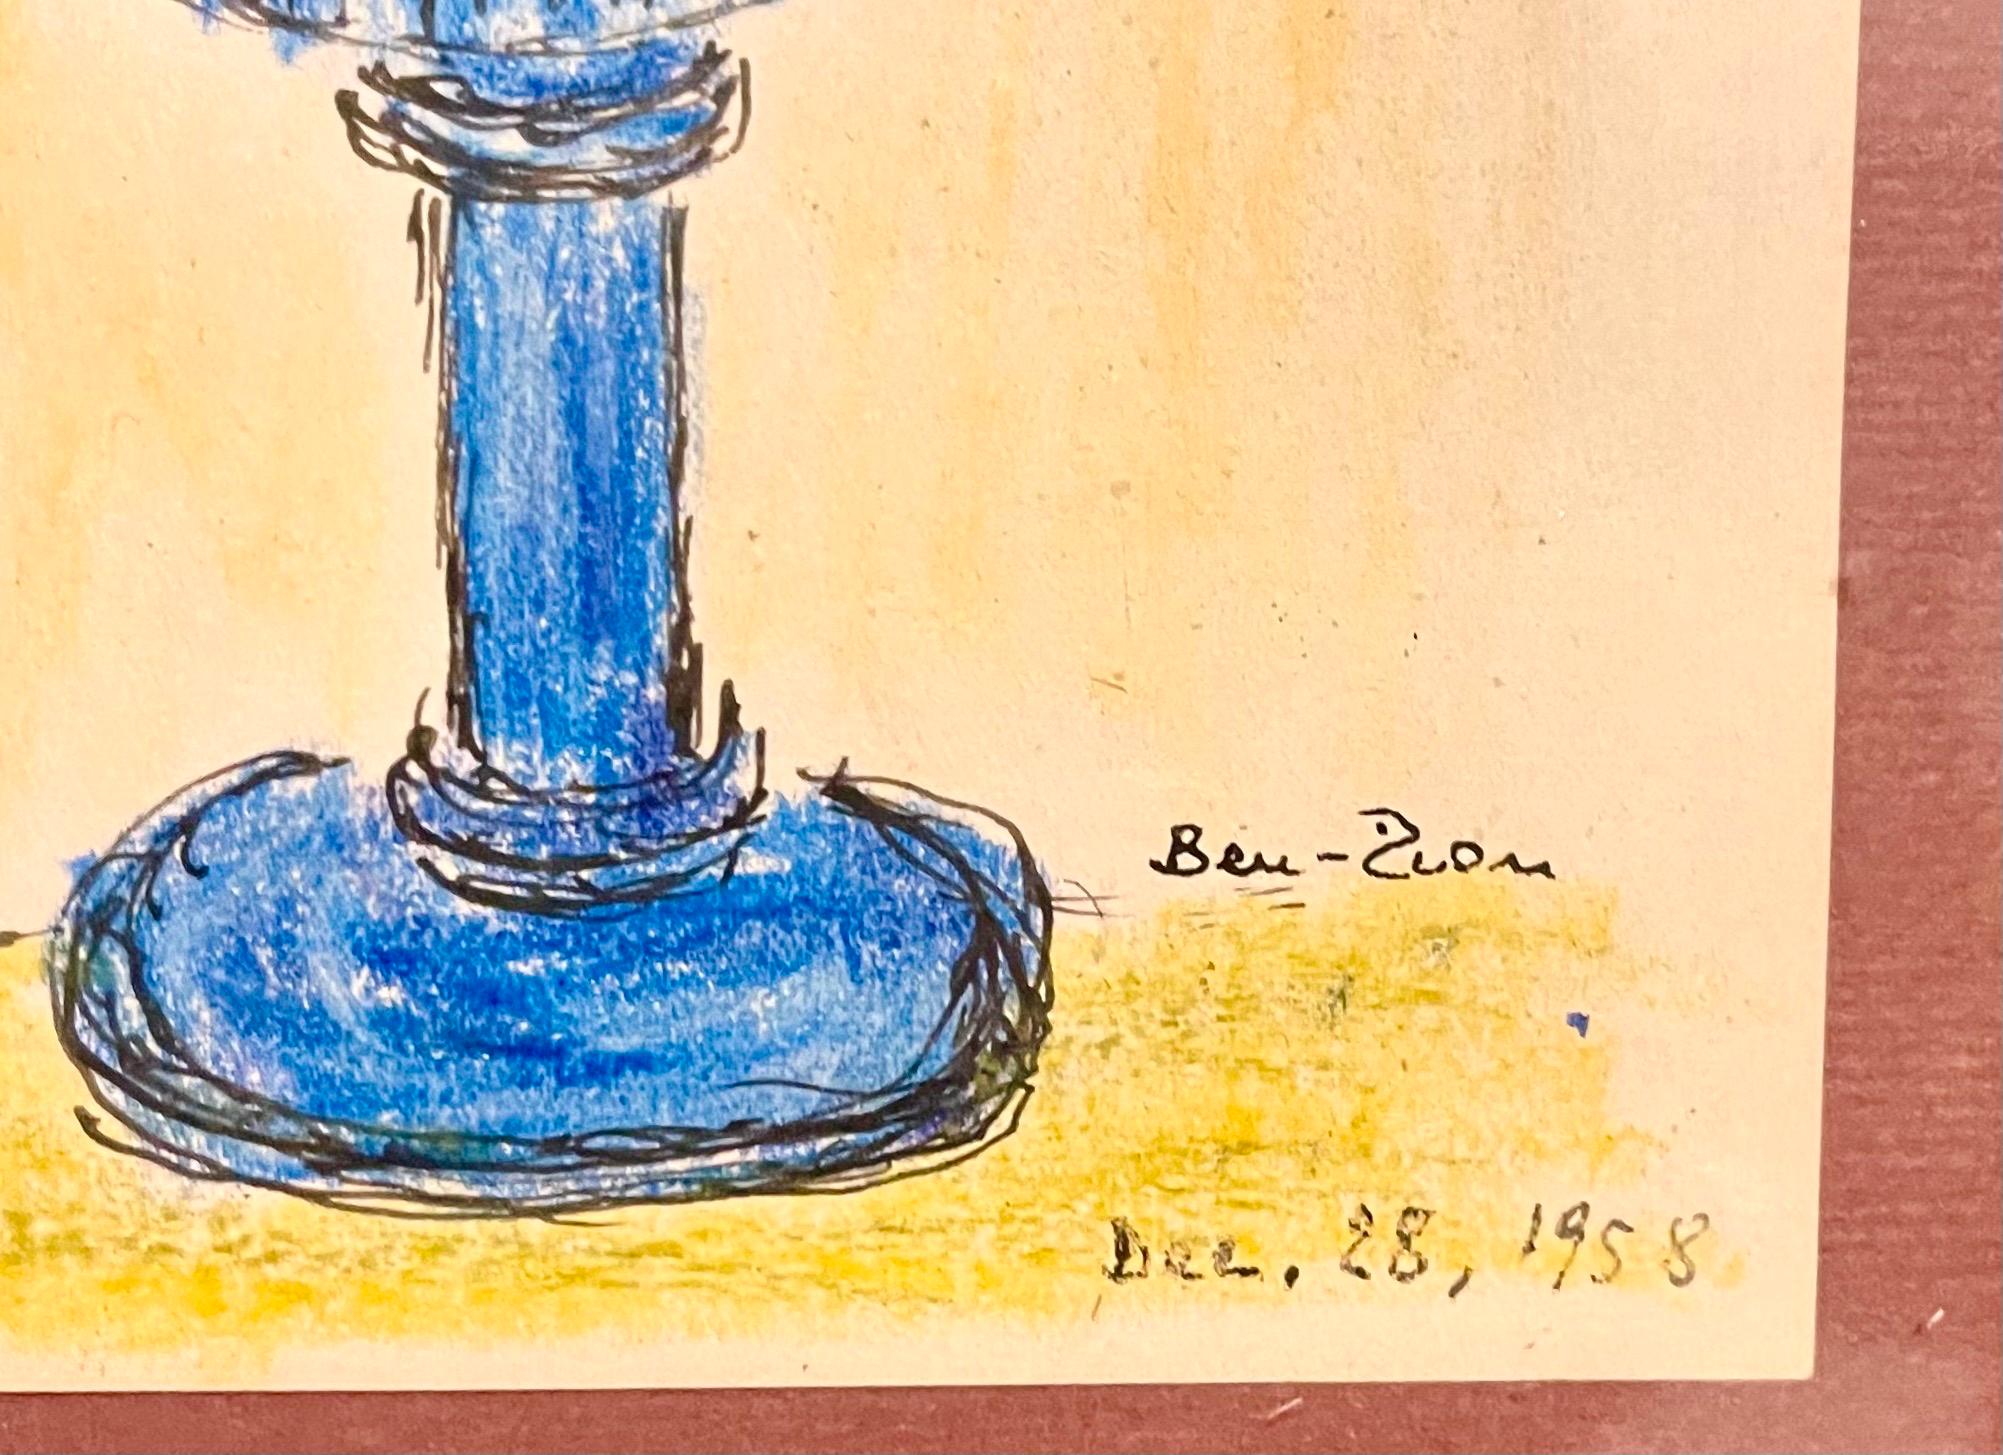 Dessin expressionniste à l'encre et au pastel représentant des fleurs dans un vase. 
Encadré dans un cadre original en verre bleu cobalt d'époque.
Signé et daté à la main
Encadré, il mesure 13,5 X 10,5
Le papier actuel est de 7,5 x 5,5.

Né en 1897,